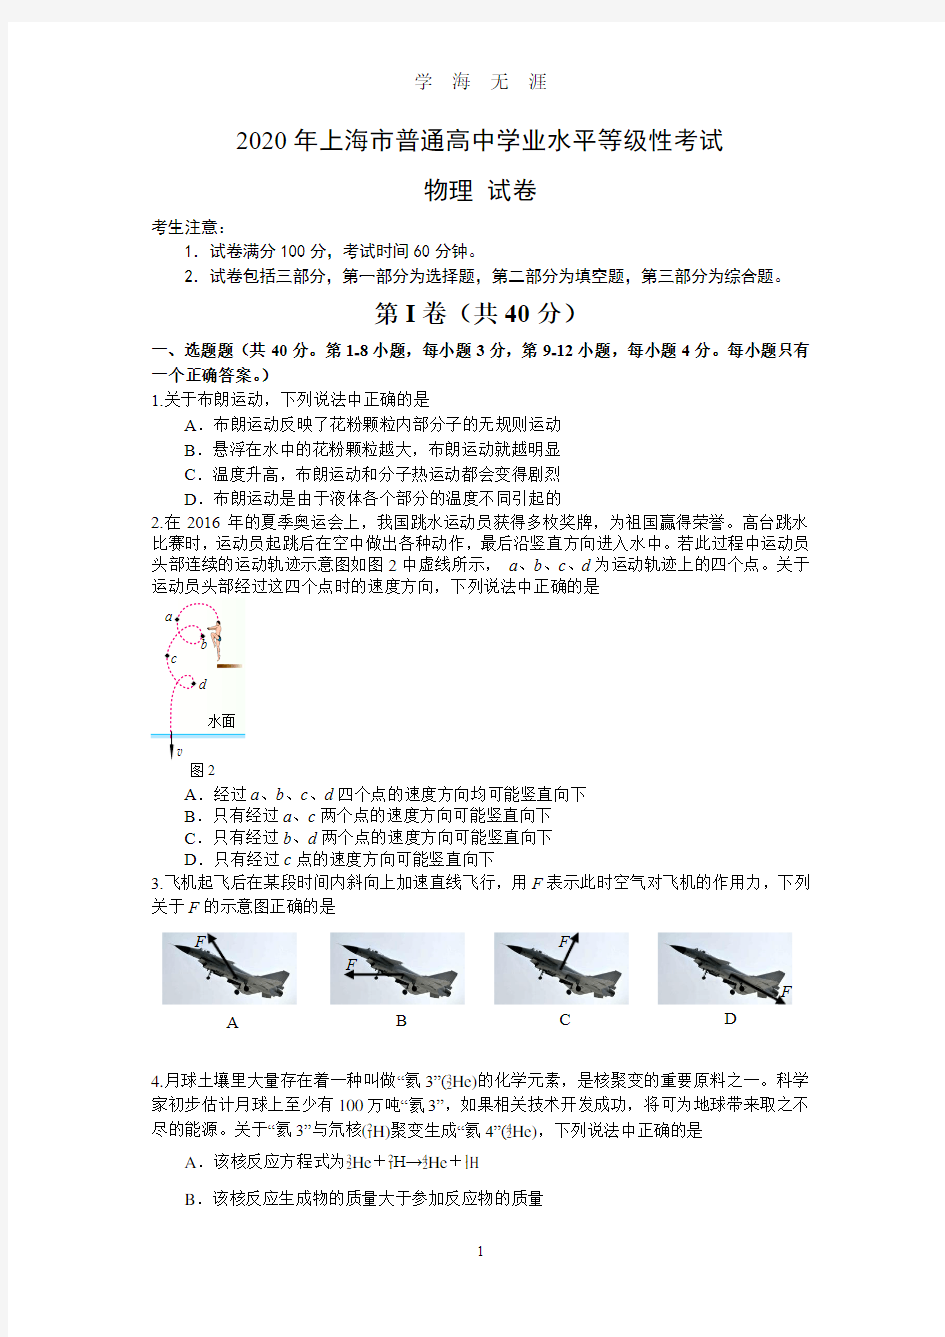 上海高考物理等级考(2020年7月整理).pdf